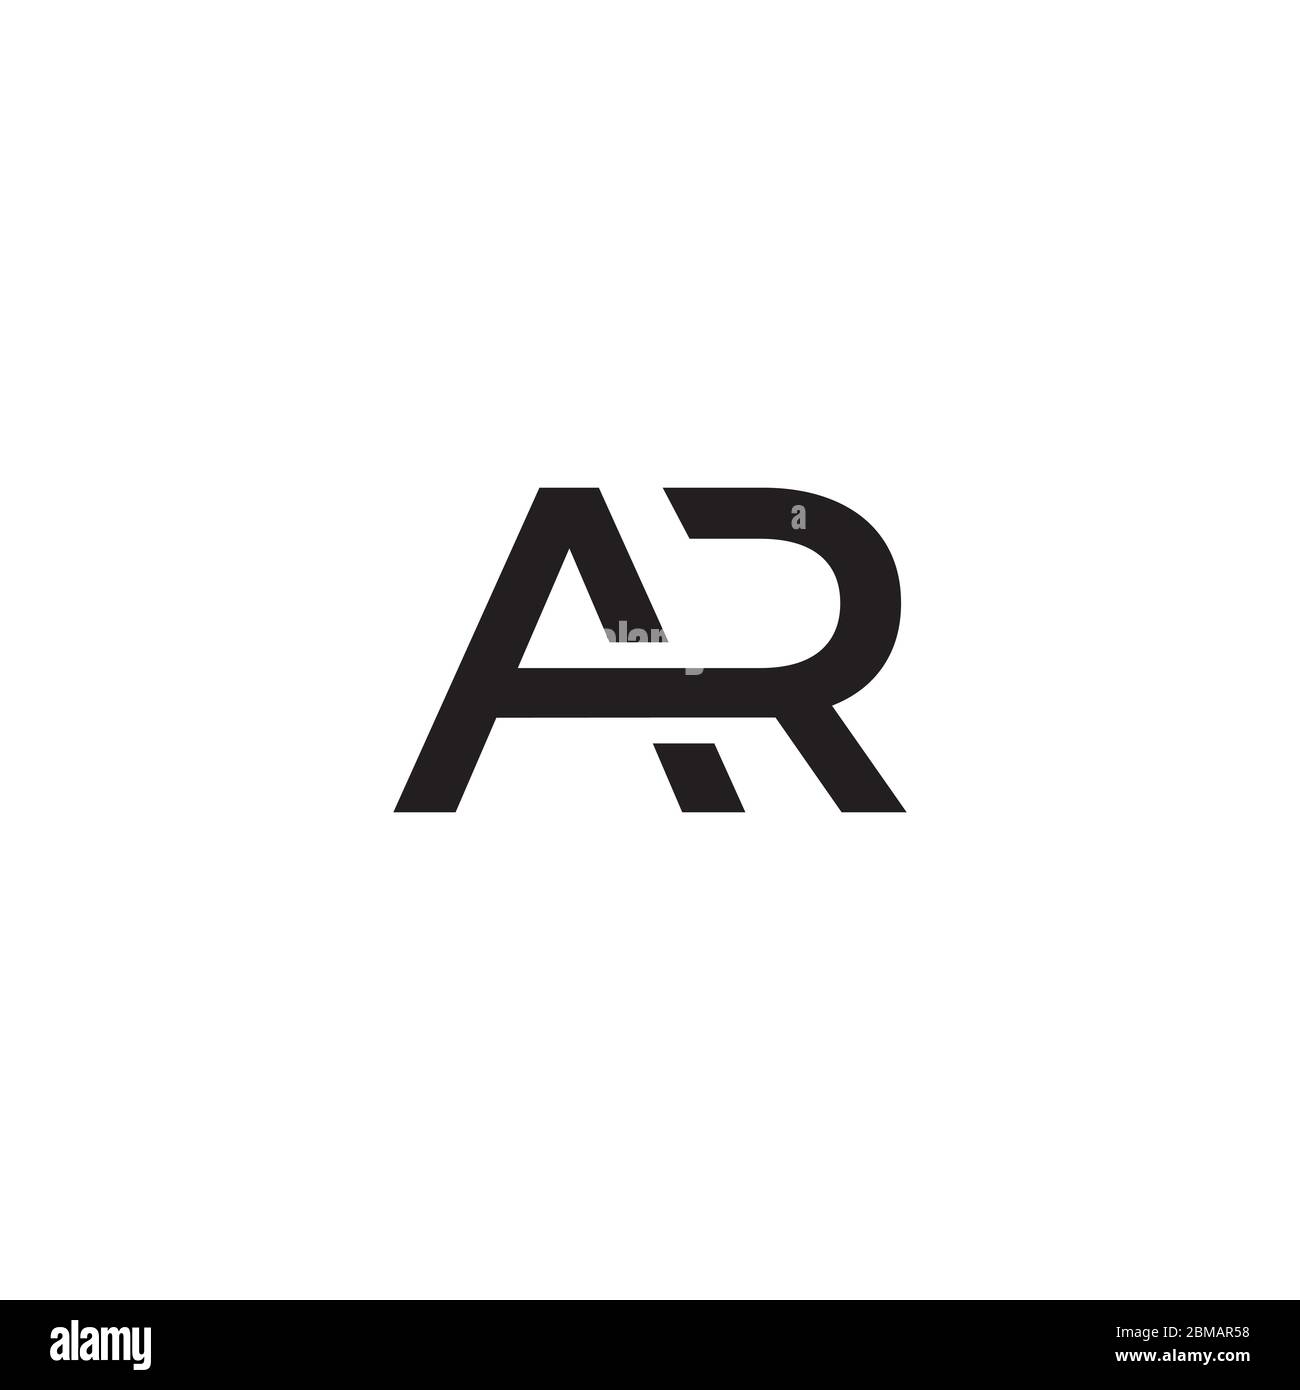 Turnaround initial q monogram lettermark symbol Vector Image